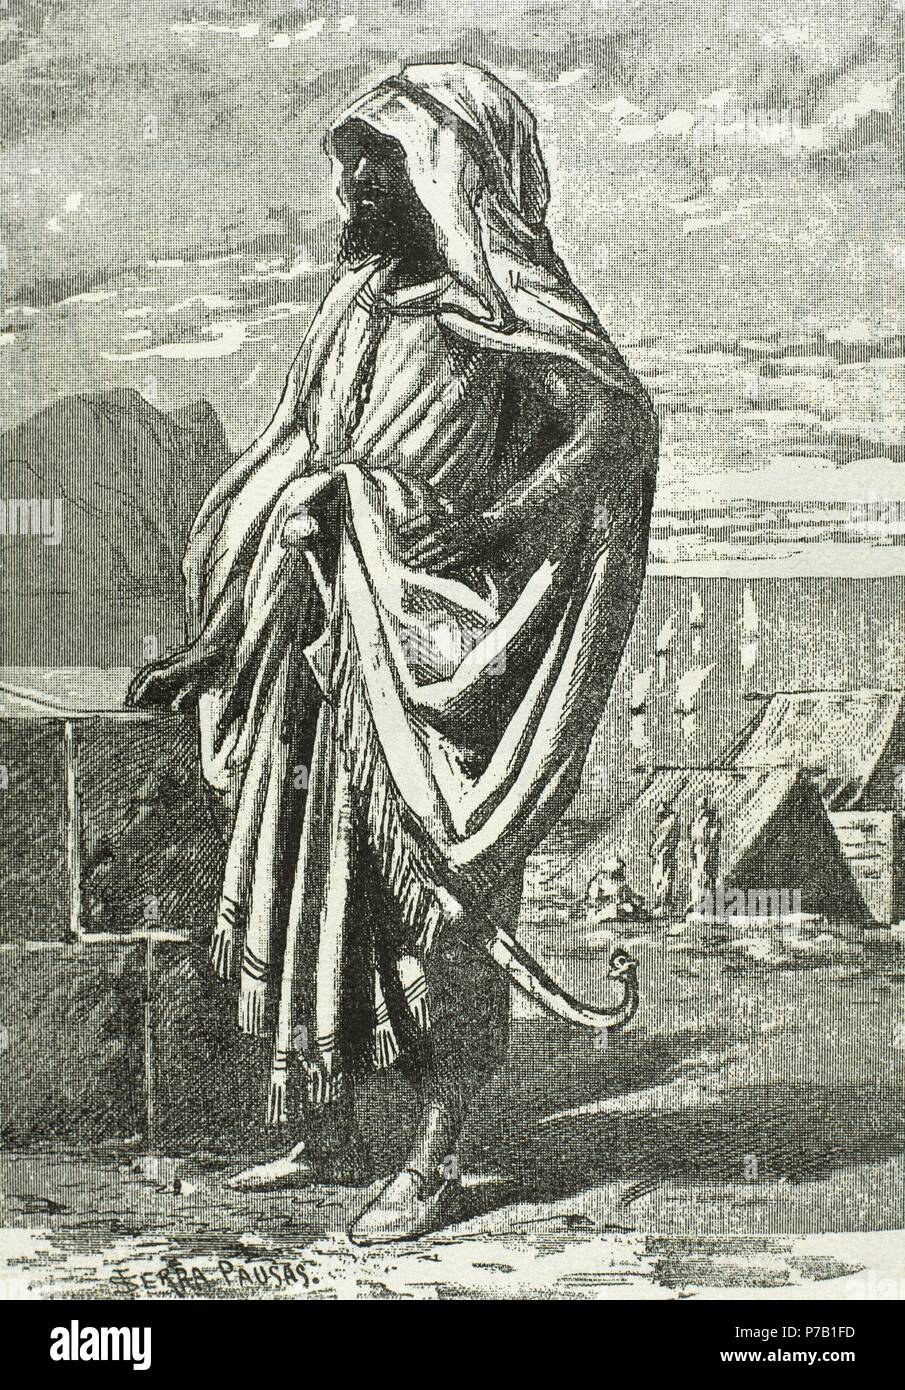 Tariq ibn Ziyad (670-722). Musulmani generale delle tribù berbere del Nafza che ha guidato la conquista musulmana dell'Hispania visigota. Incisione. Foto Stock